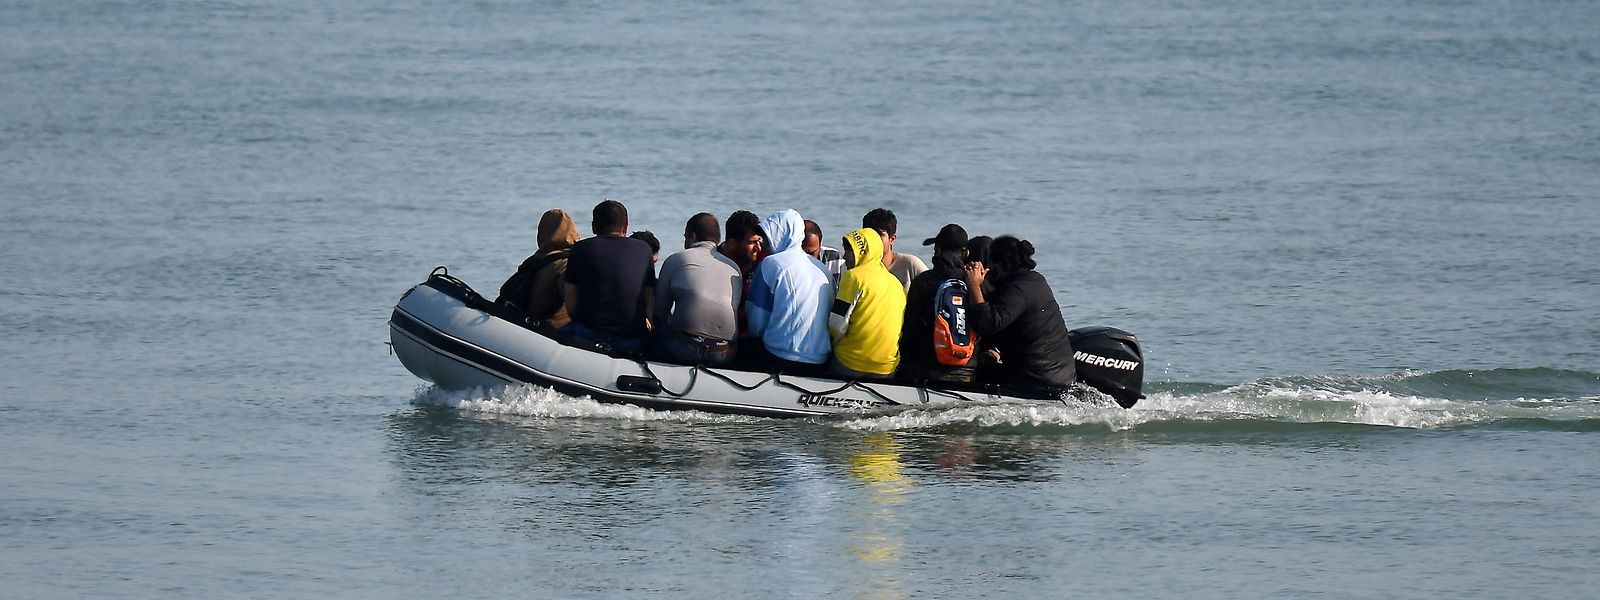 In der Ägäis kommt es immer wieder zu tragischen Bootsunglücken von Migranten, die die gefährliche Überfahrt über das Mittelmeer wagen.